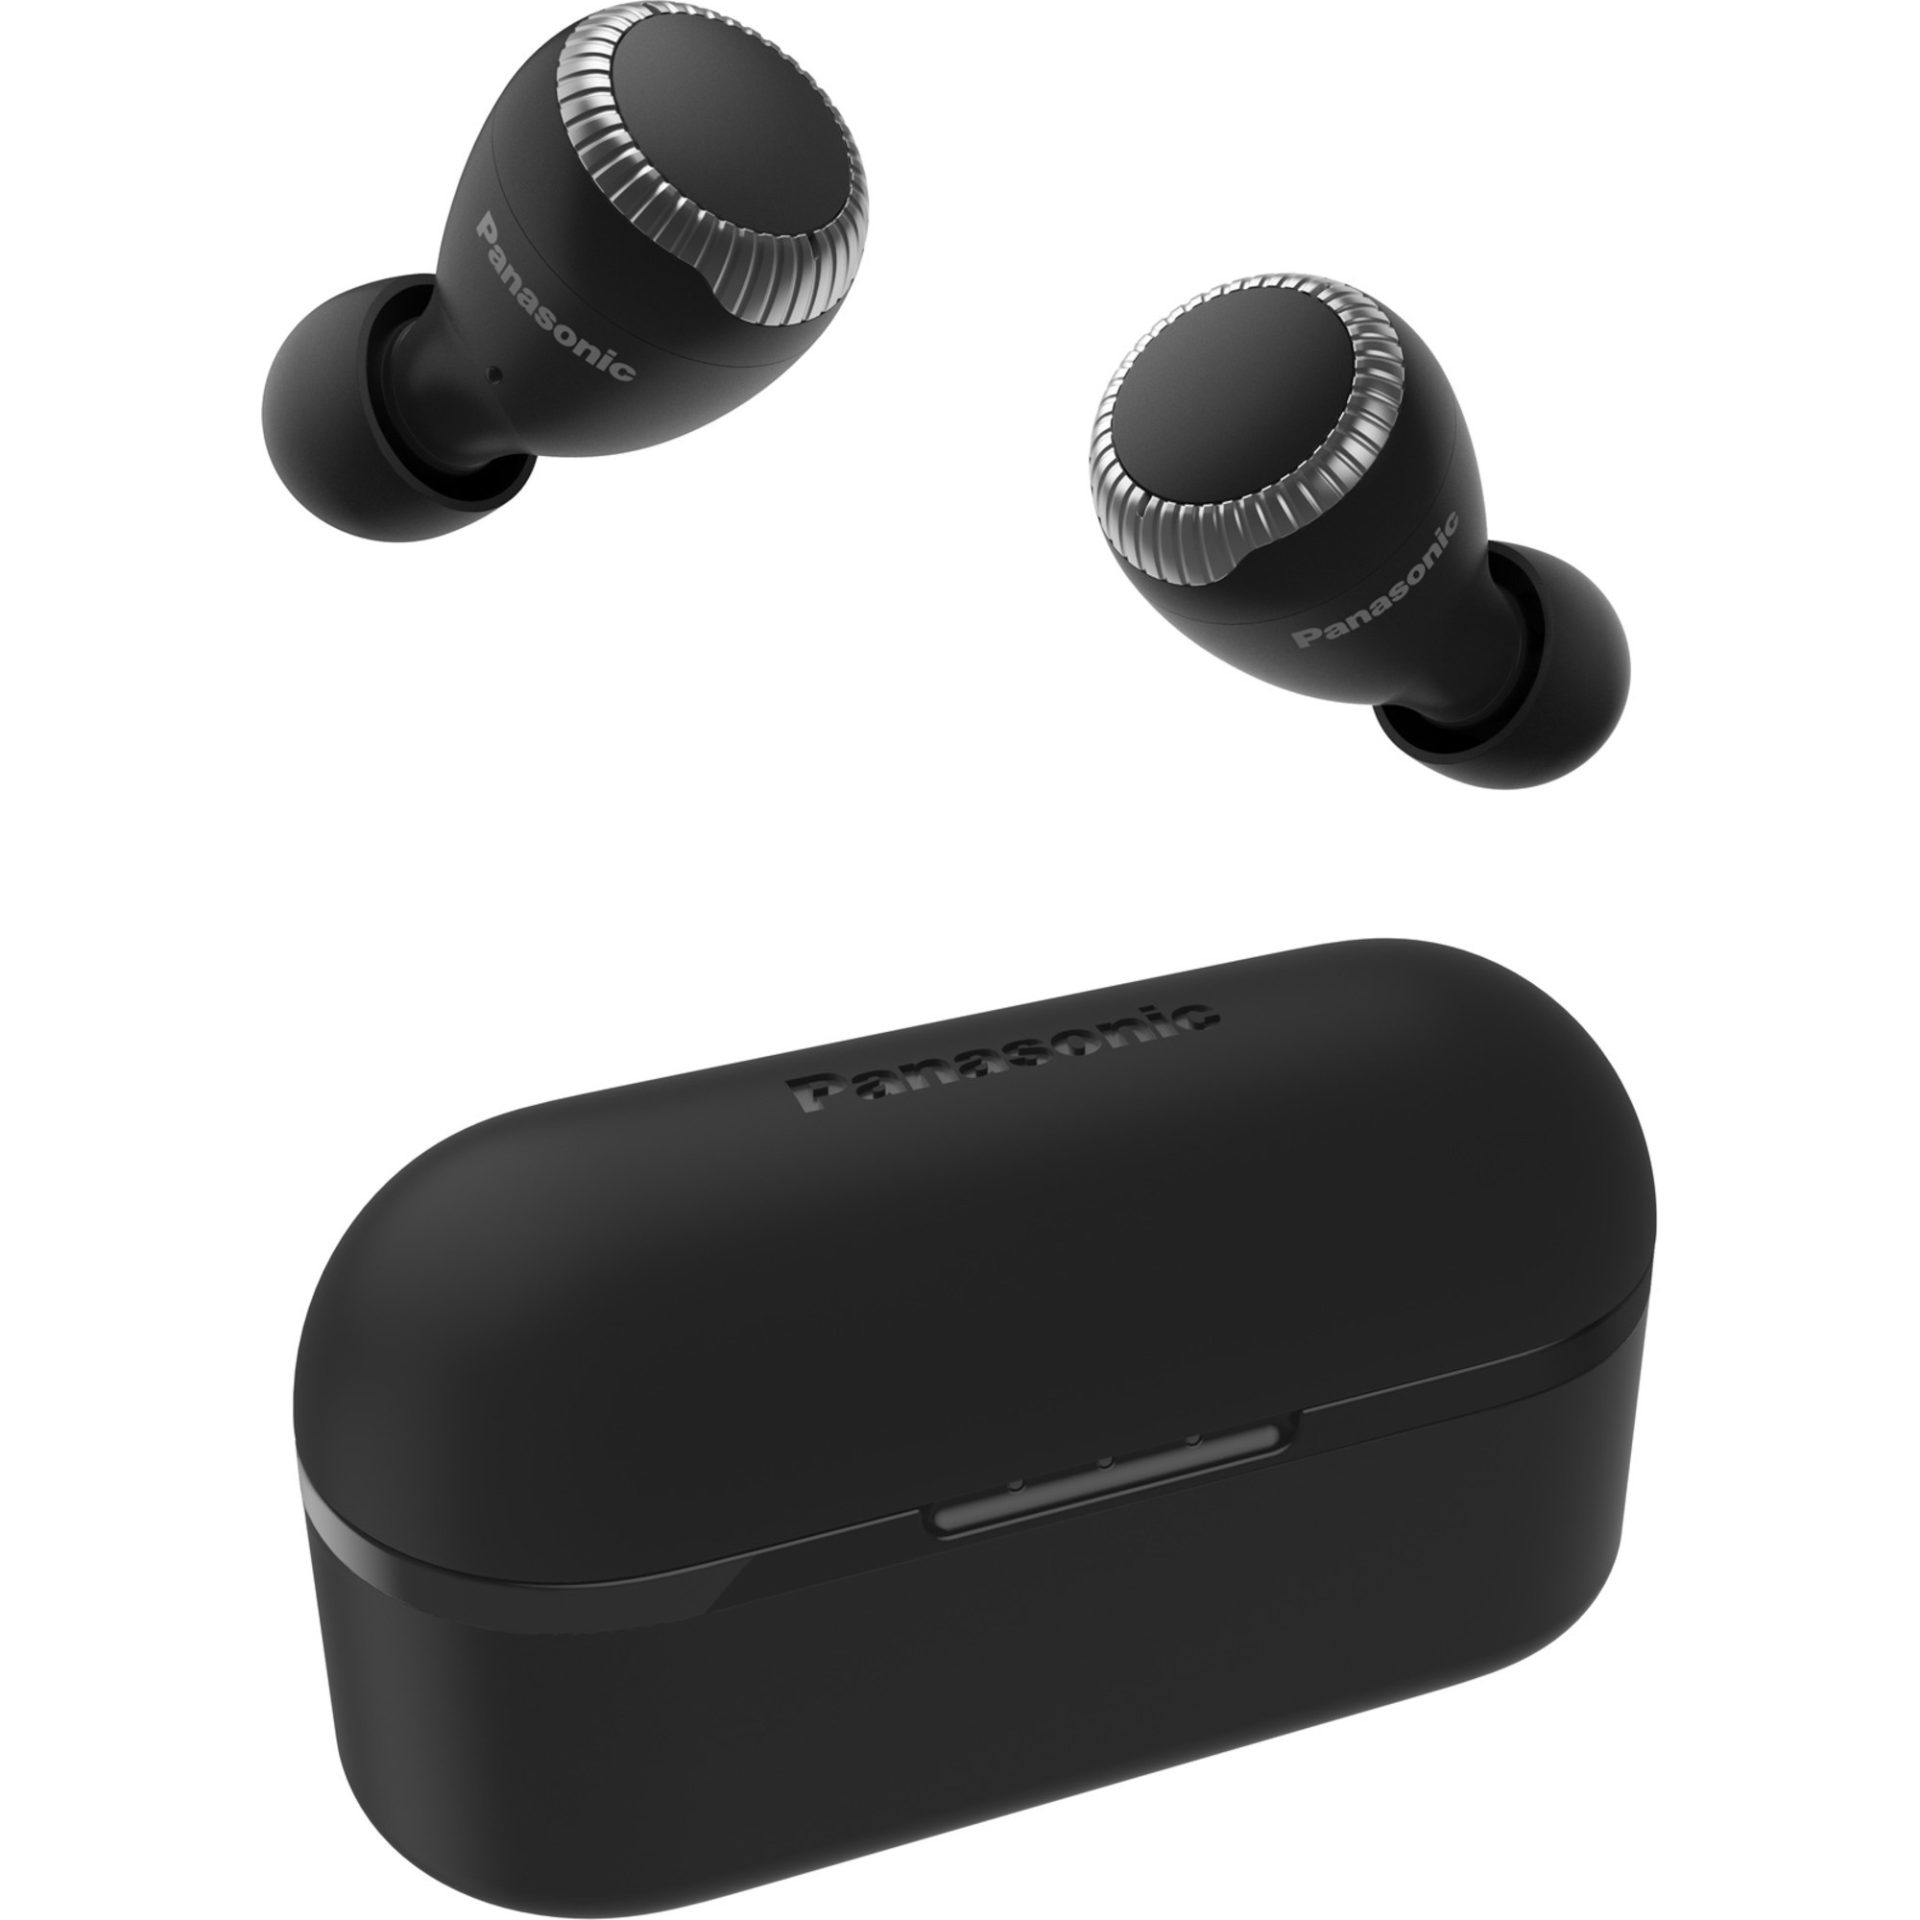 Panasonic RZ-S300 True Wireless Bluetooth sluchátka do uší (6 mikrofonů MEMS, 30h přehrávání s nabíjecím pouzdrem, IPX4 voděodolnost, dosah 10m), čern